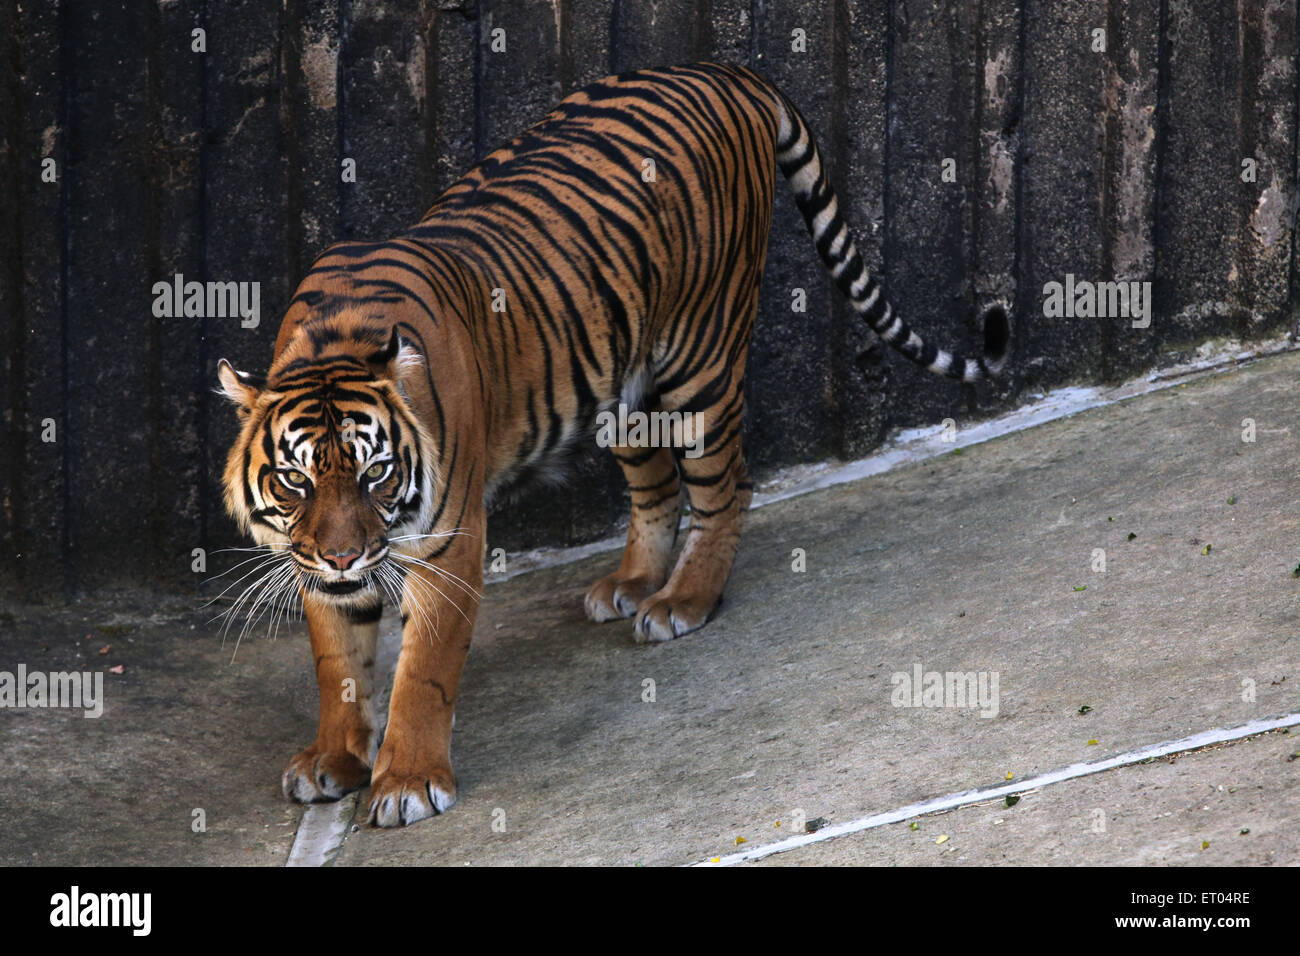 Sumatran tiger (Panthera tigris sumatrae) at Prague Zoo, Czech Republic. Stock Photo